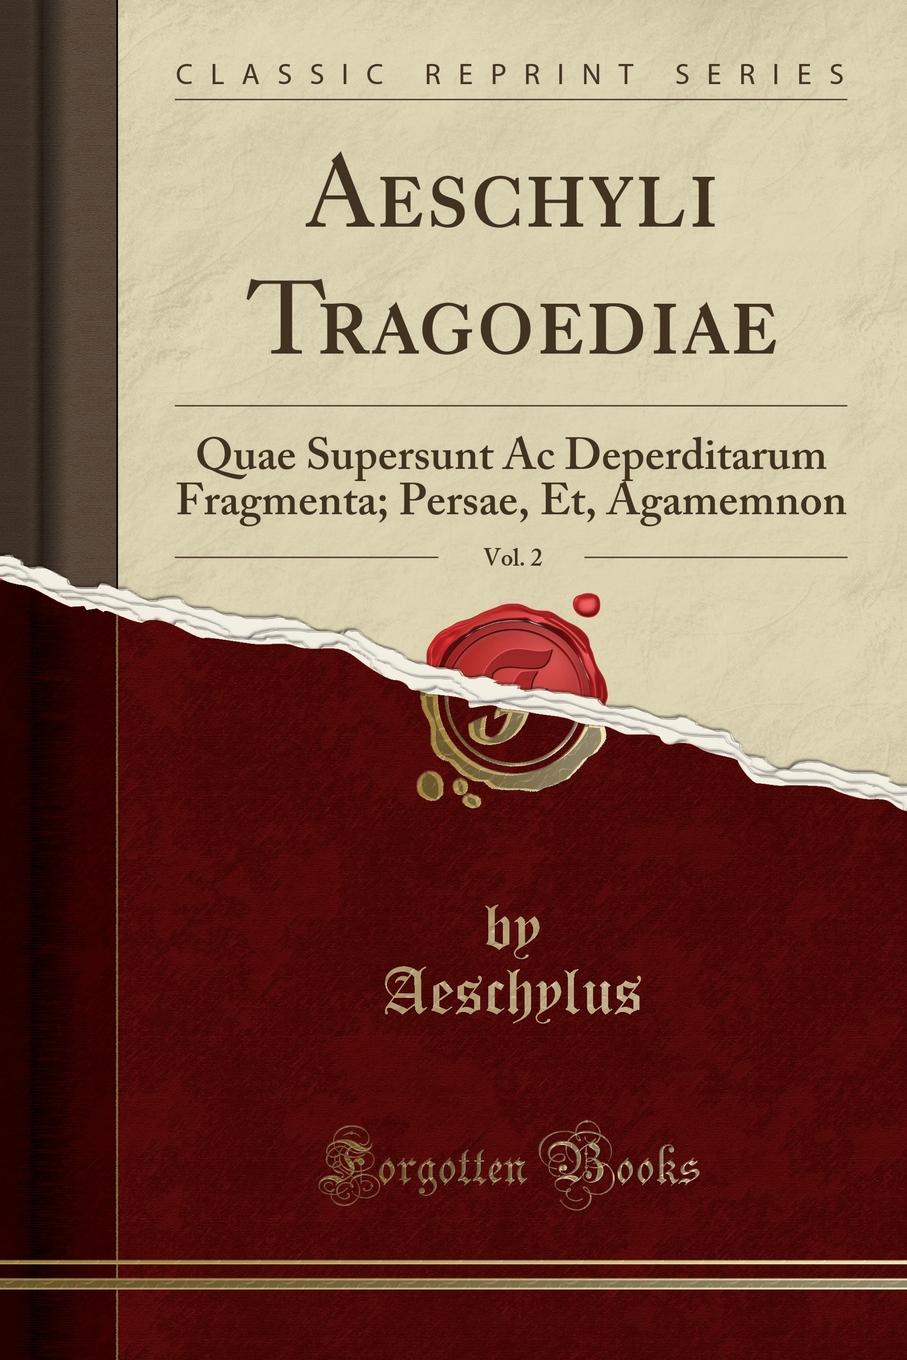 Aeschyli Tragoediae, Vol. 2. Quae Supersunt Ac Deperditarum Fragmenta; Persae, Et, Agamemnon (Classic Reprint)